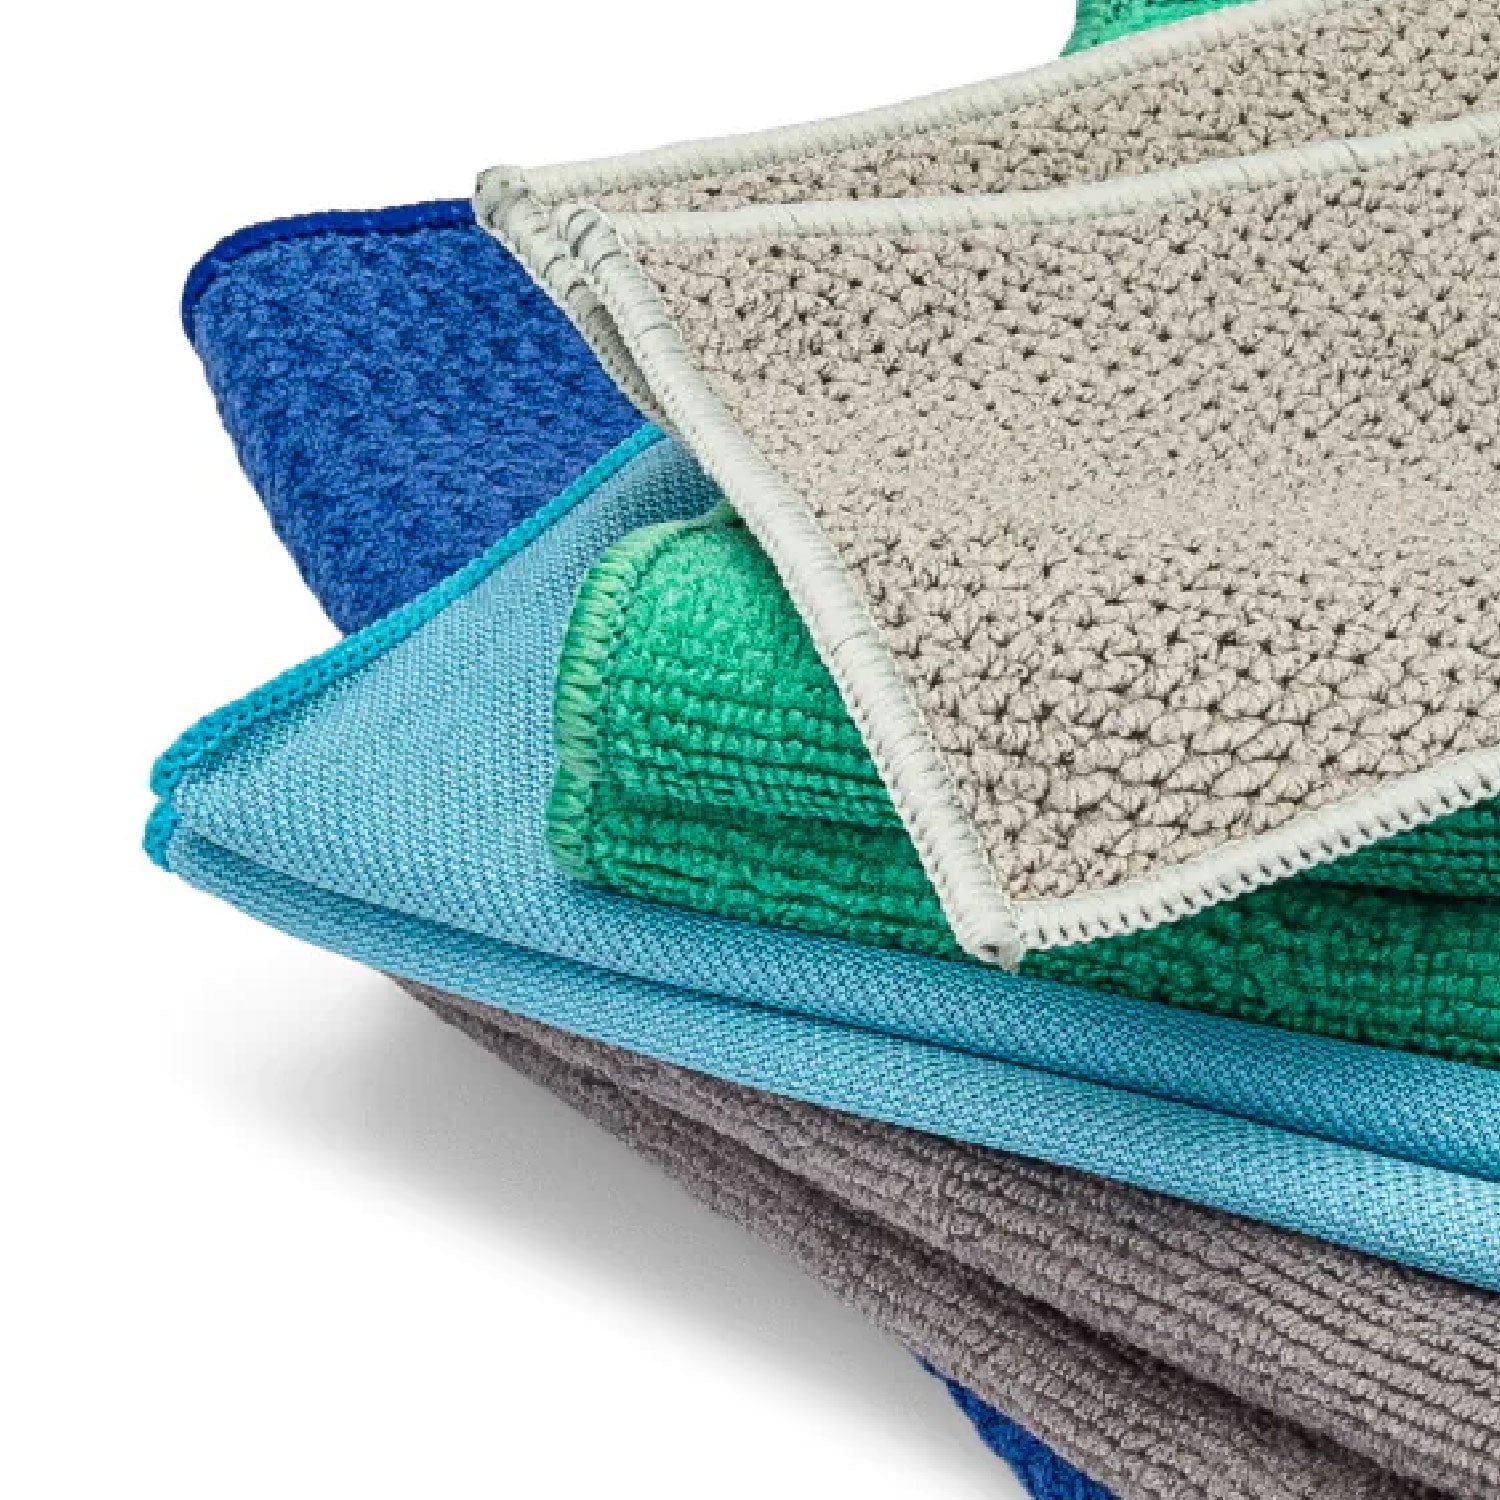 Variety Pack Of Microfiber Towels